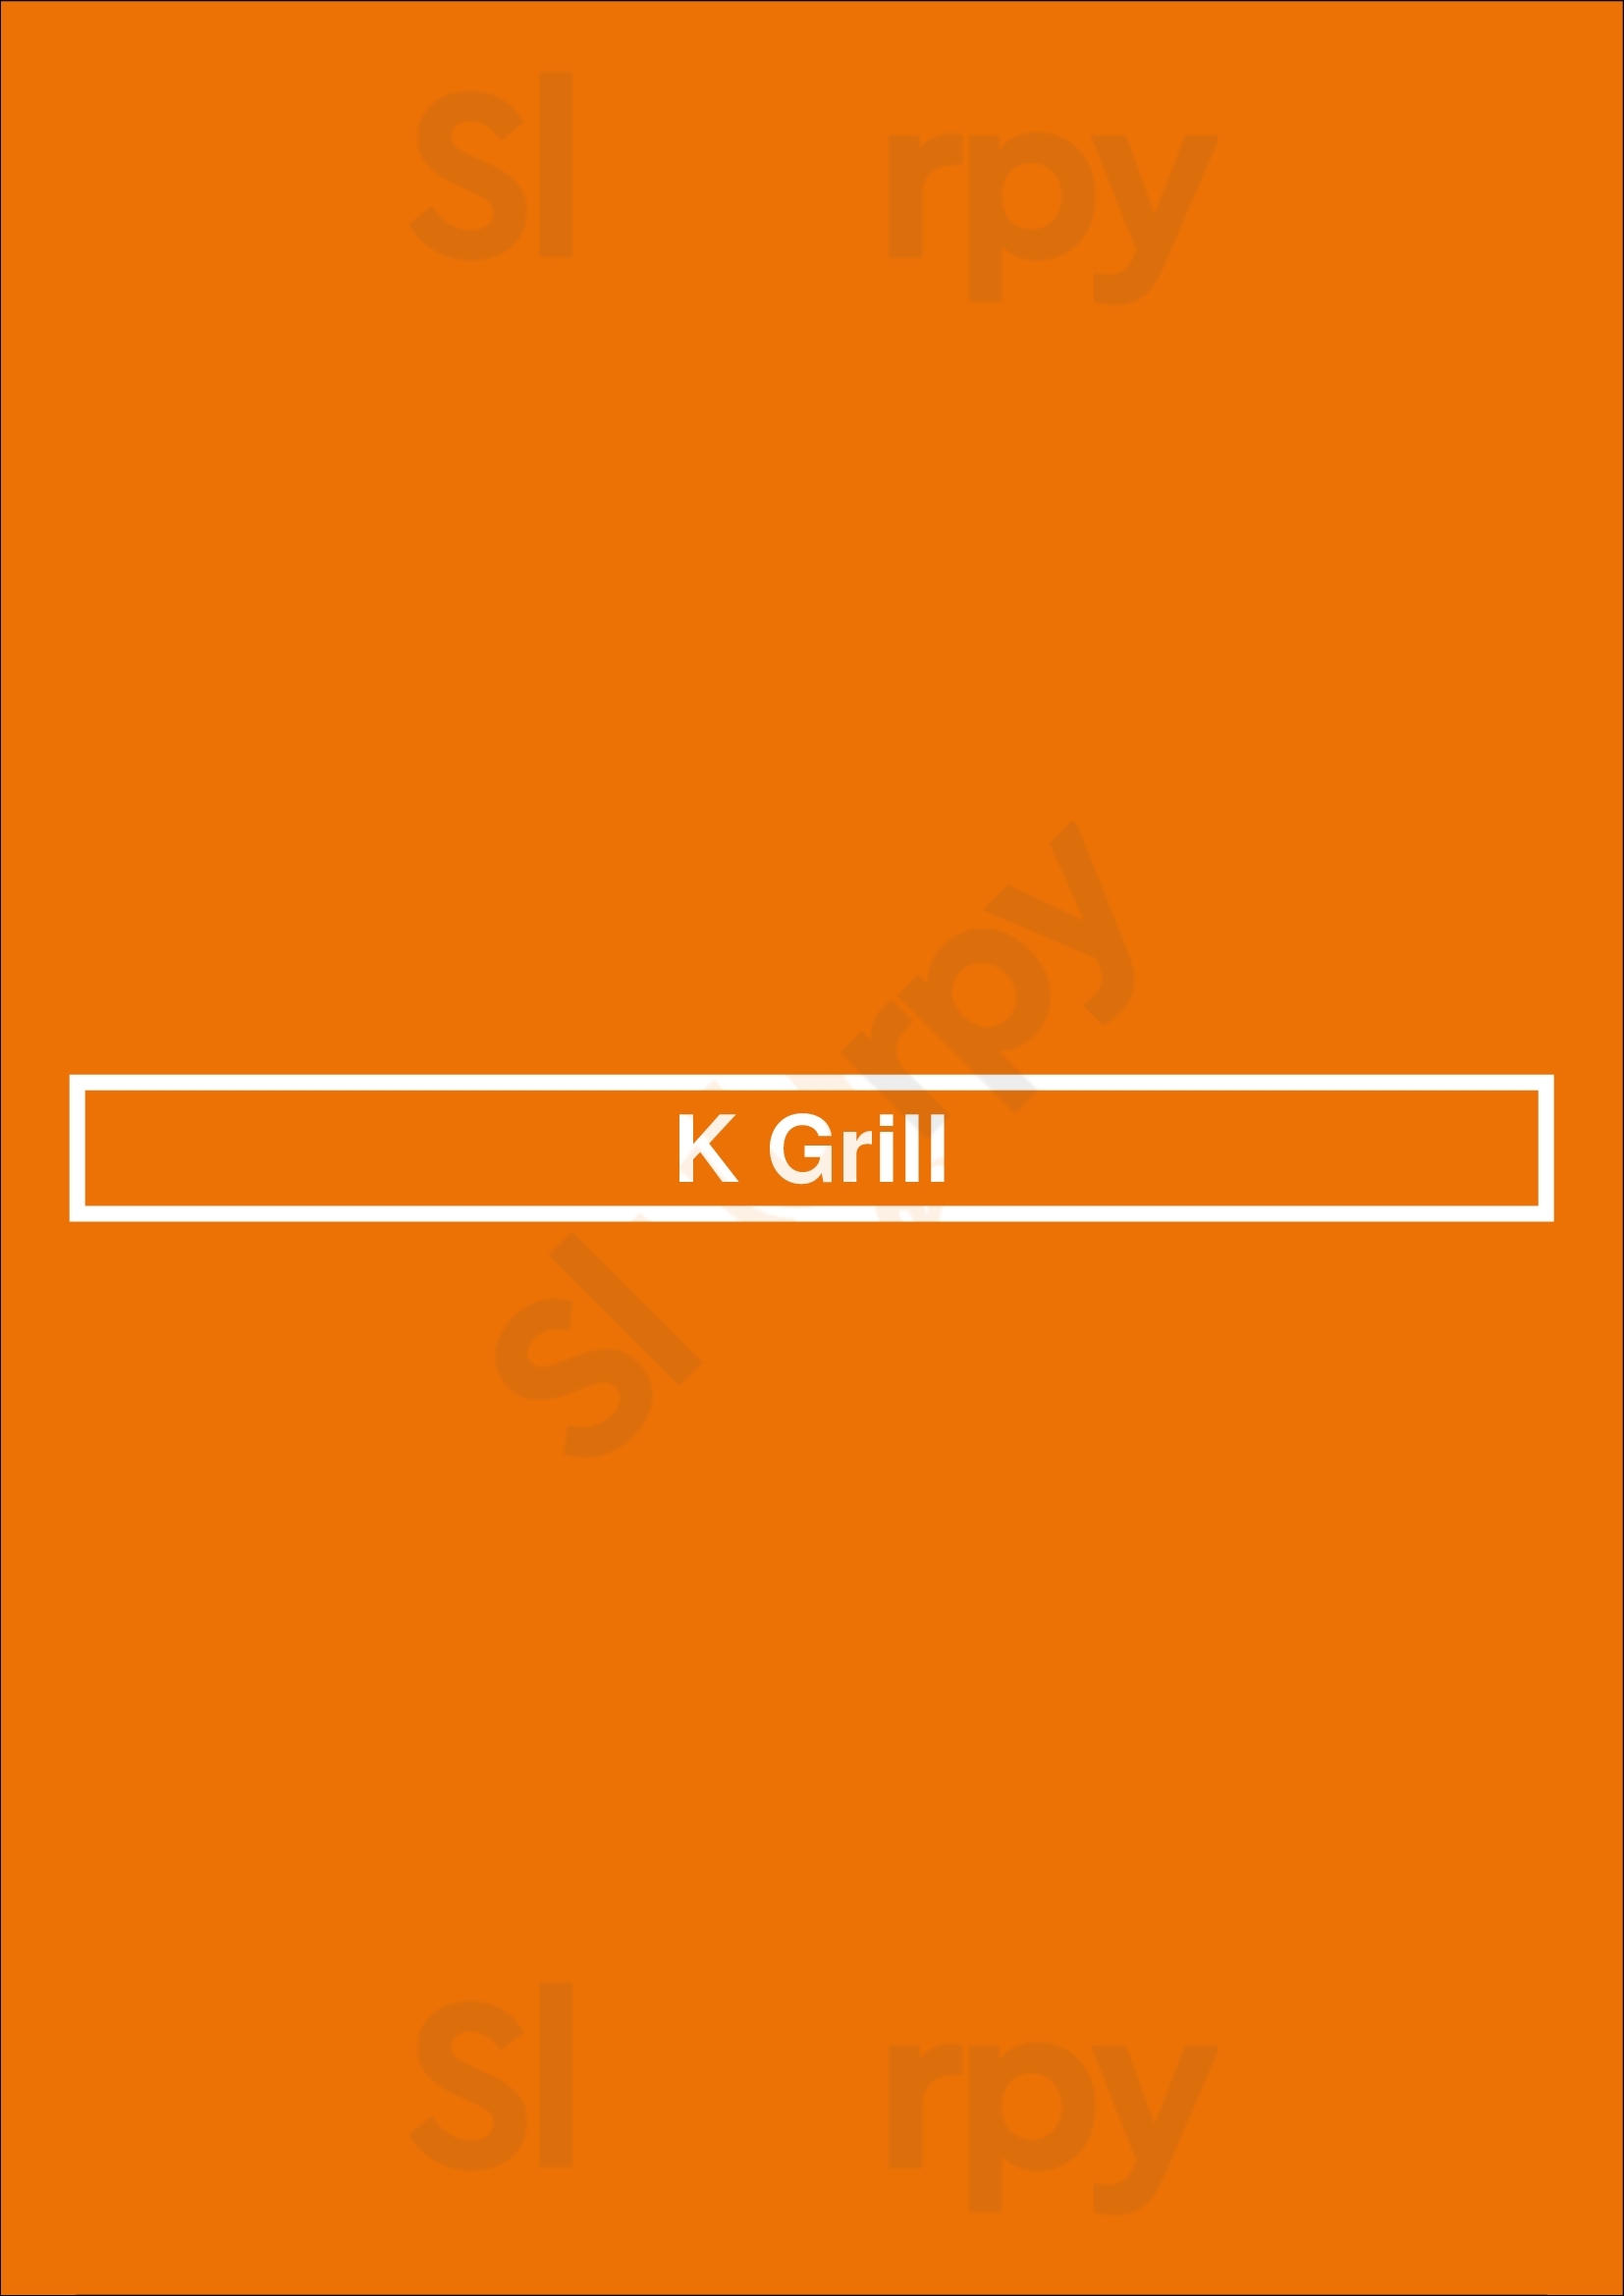 K Grill London Menu - 1